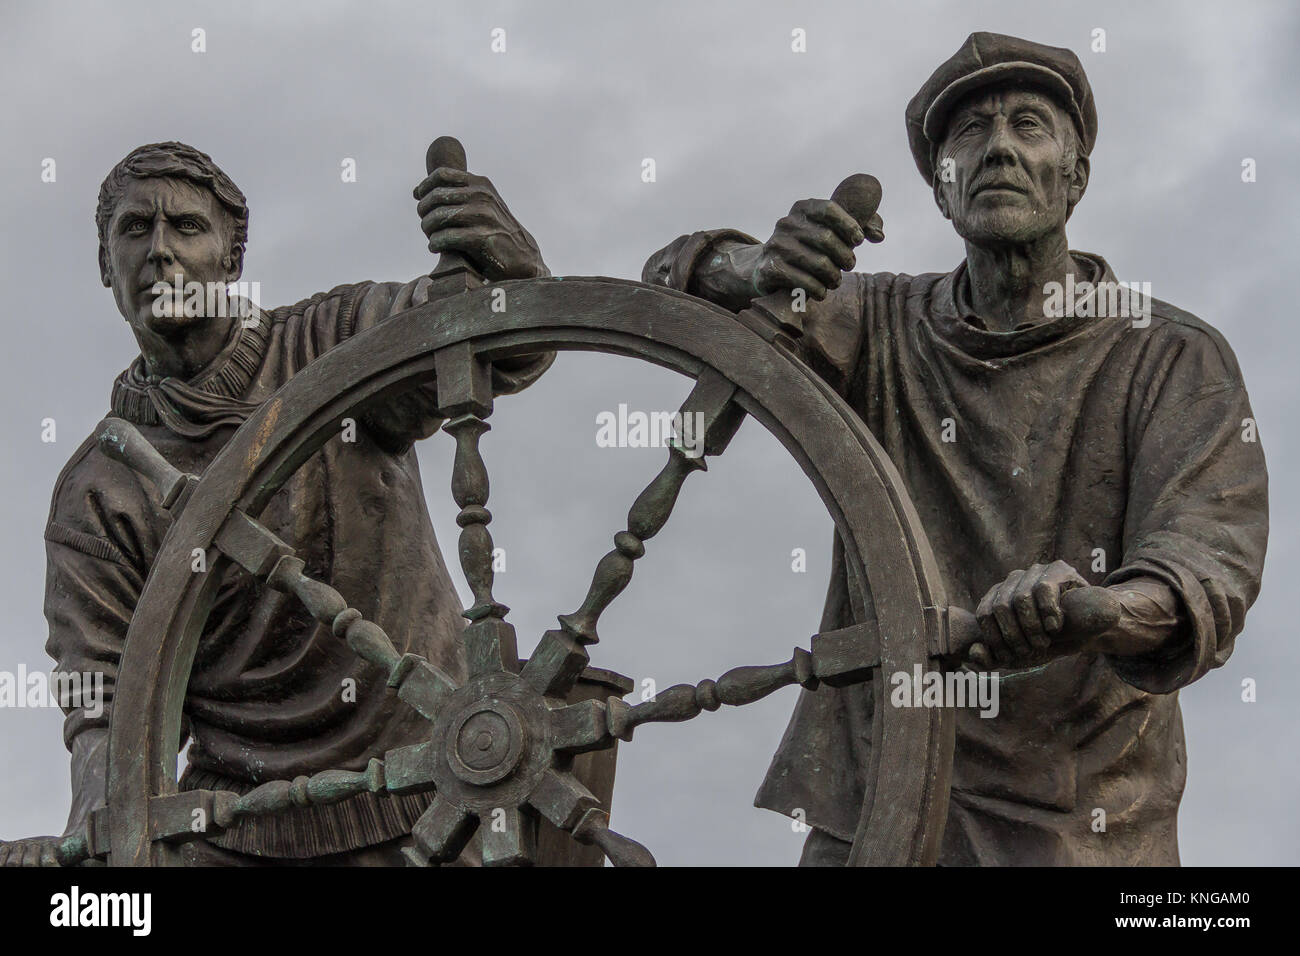 'Man & Boy' Life-dimensionato statua, commemorando vite perdute in mare e celebrando Brixhams patrimonio di pesca. Brixham, Torbay, Devon, Regno Unito. Foto Stock